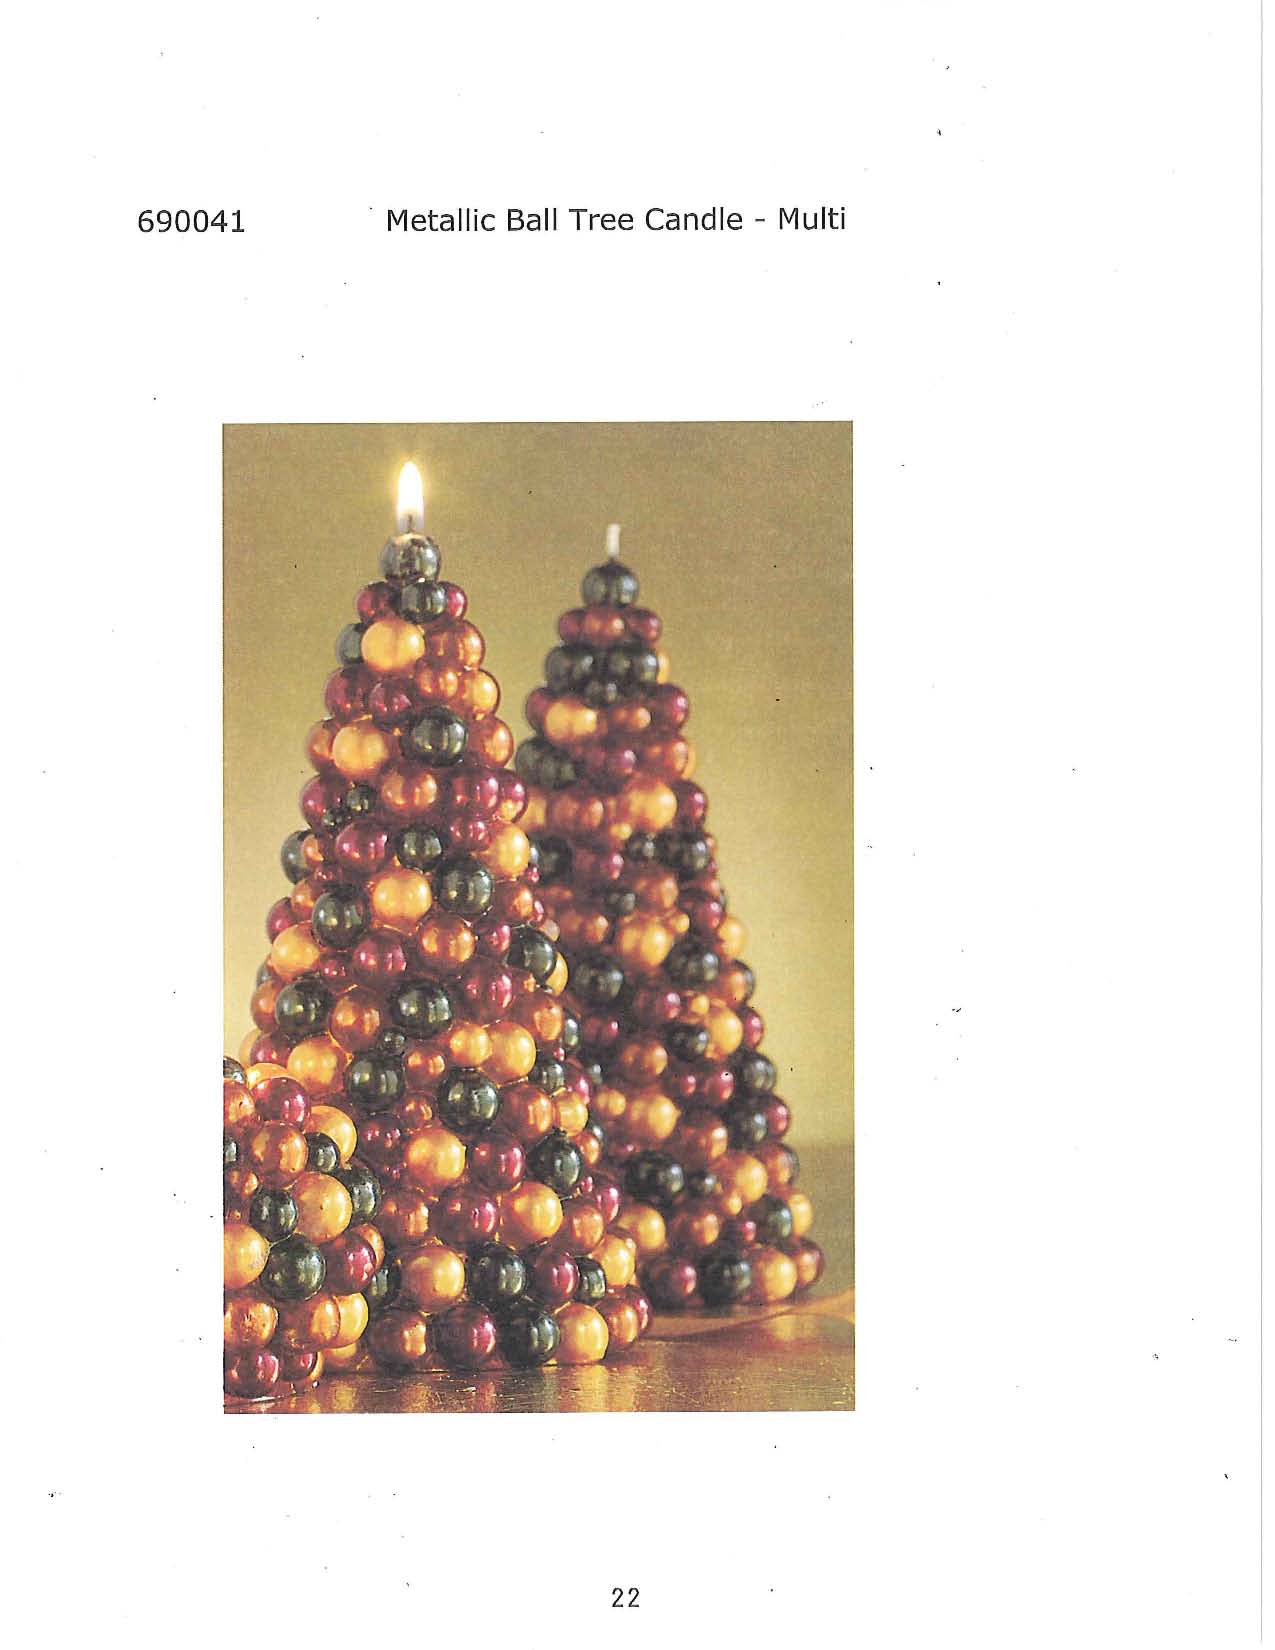 Metallic Ball Tree Candle - Multi